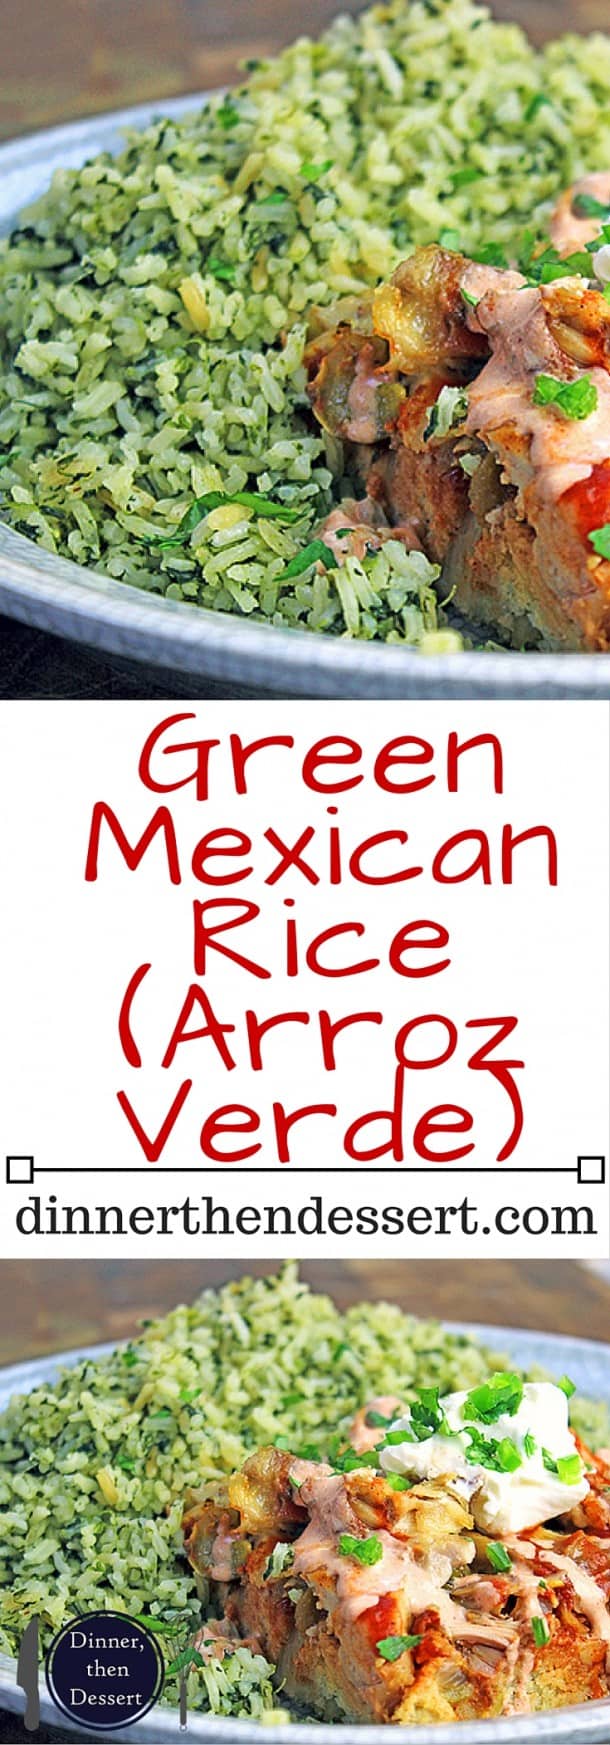 Green Mexican Rice (Arroz Verde) - Dinner, then Dessert